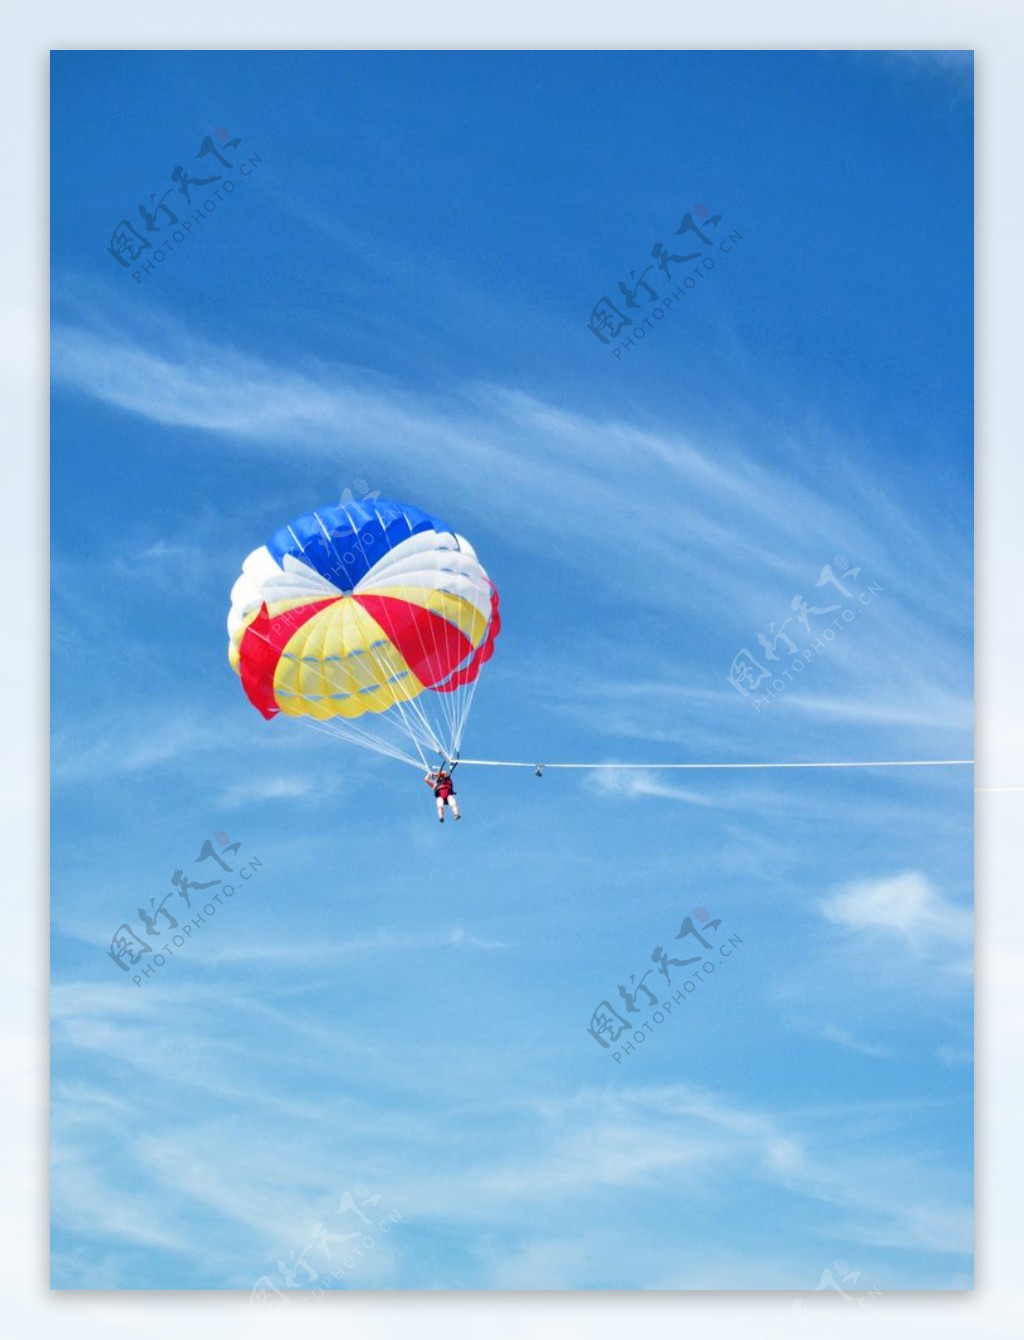 降落伞蓝天热气球摄影